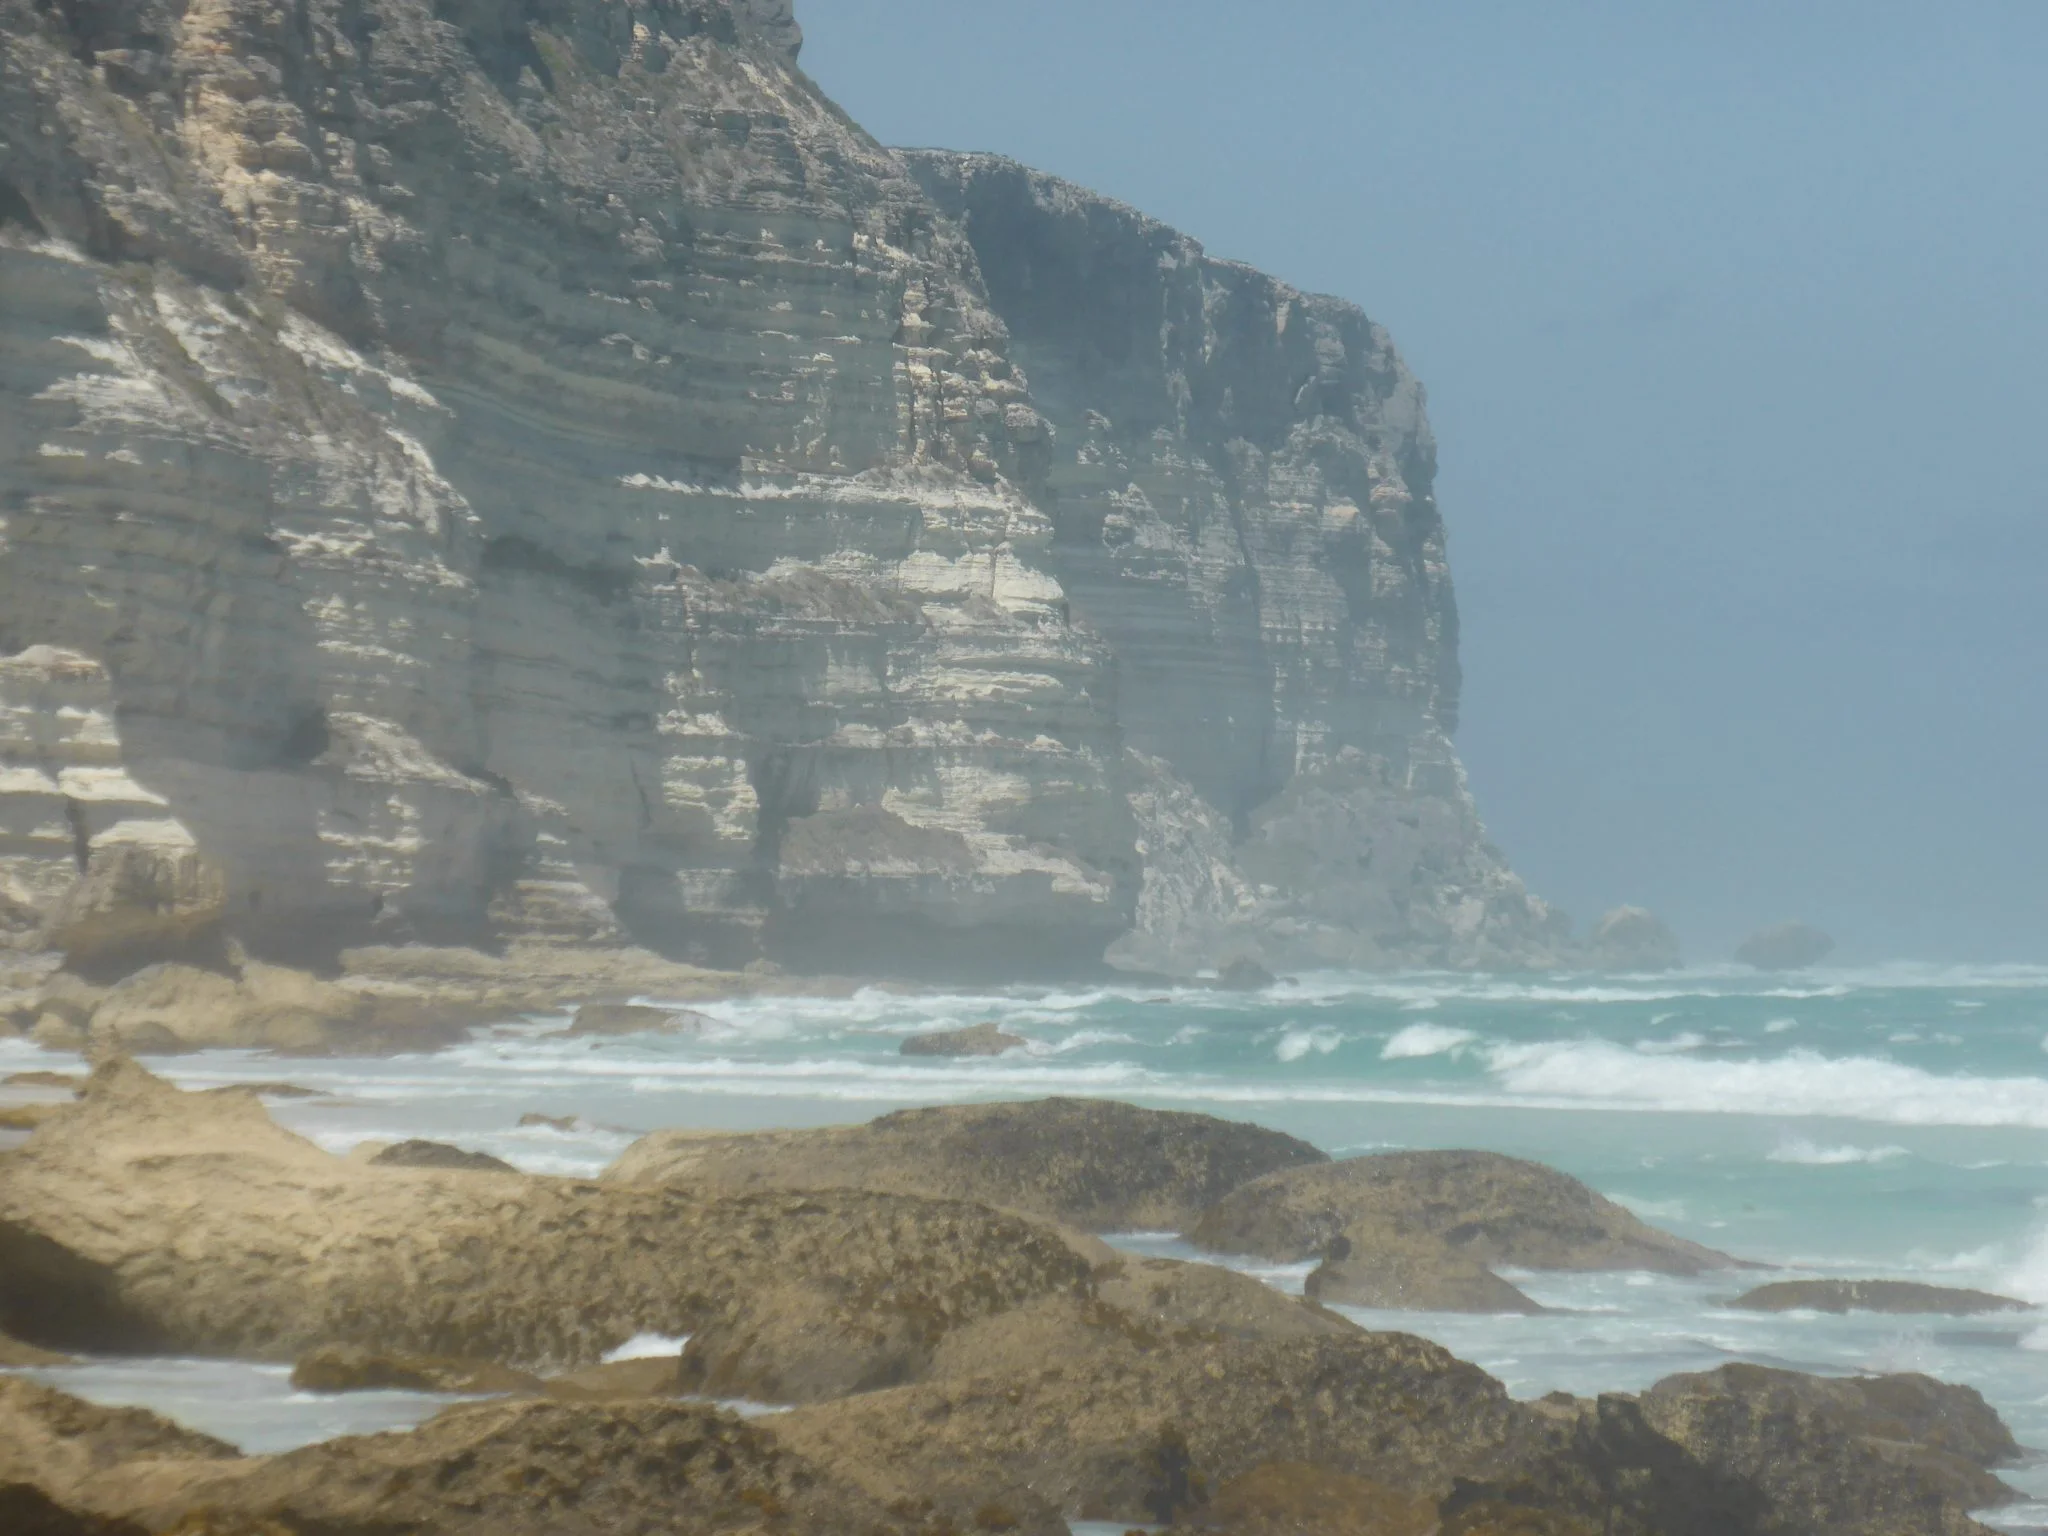 Baxter Cliffs - Great Australian Bight